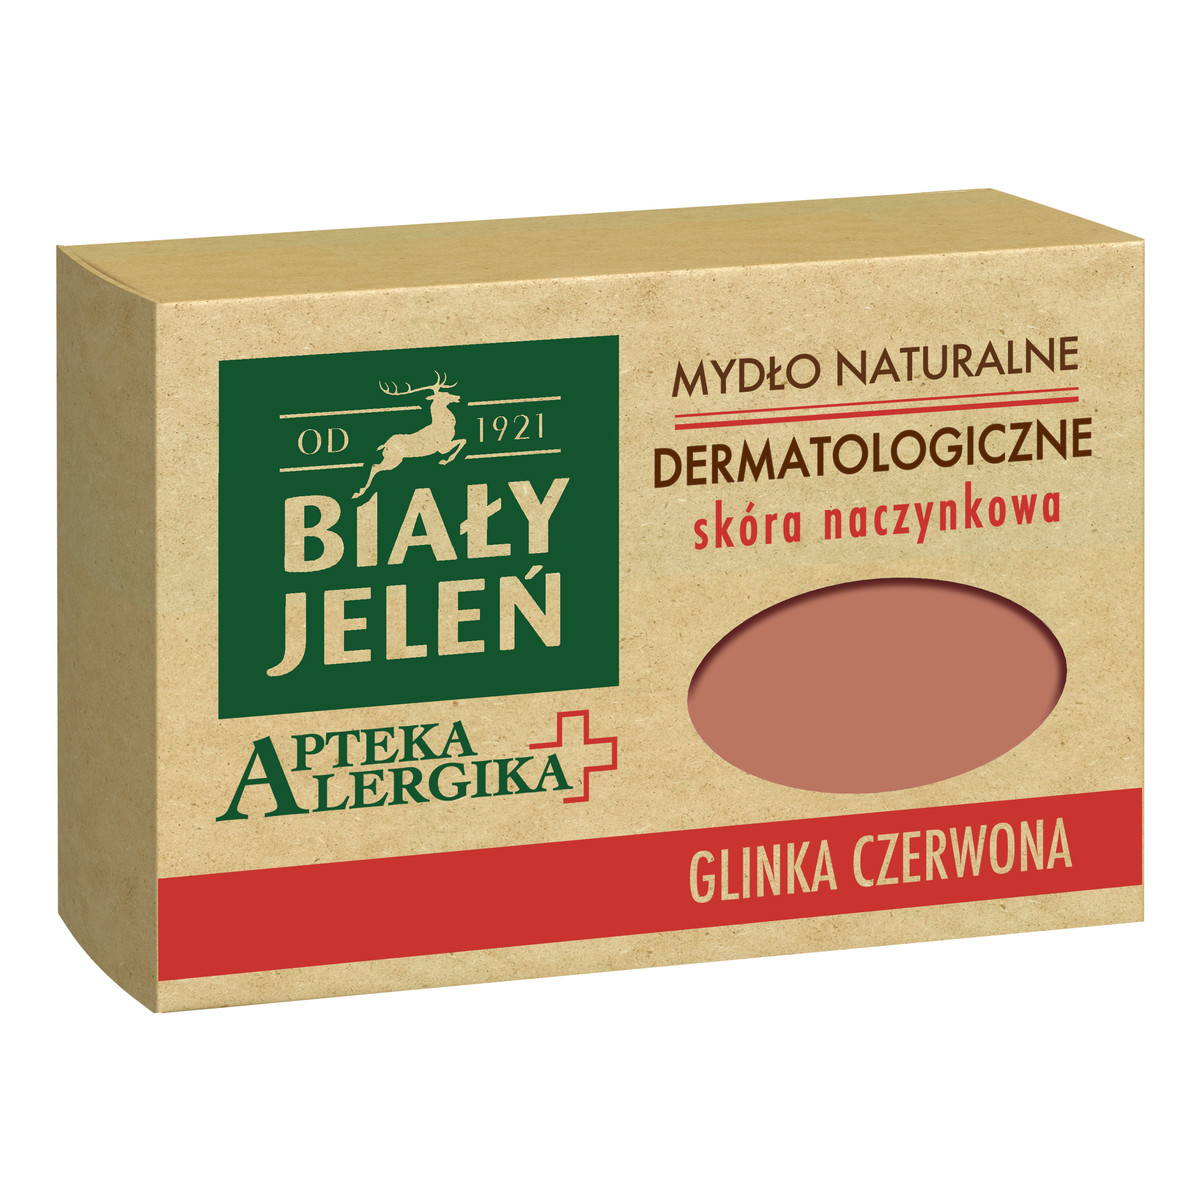 Biały Jeleń Apteka Alergika Dermatologiczne mydło naturalne Glinka czerwona - skóra naczynkowa 125g